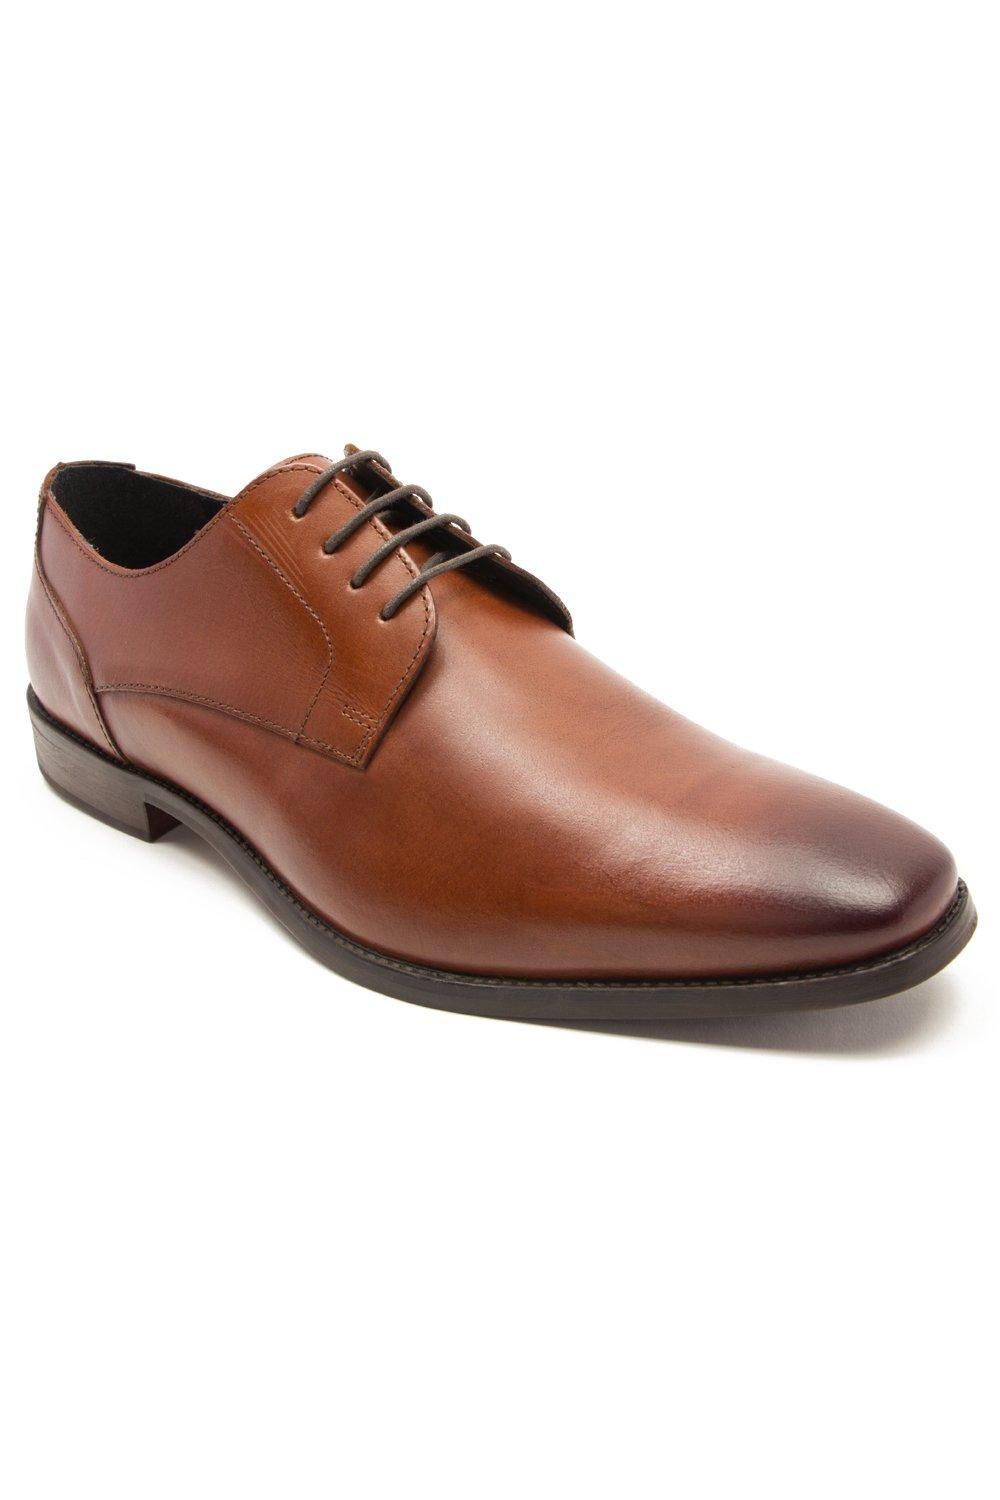 Формальные кожаные туфли дерби на шнуровке 'Falcon' Thomas Crick, коричневый кожаные деловые туфли на шнуровке в стиле смарт офис top staka shoes коричневый